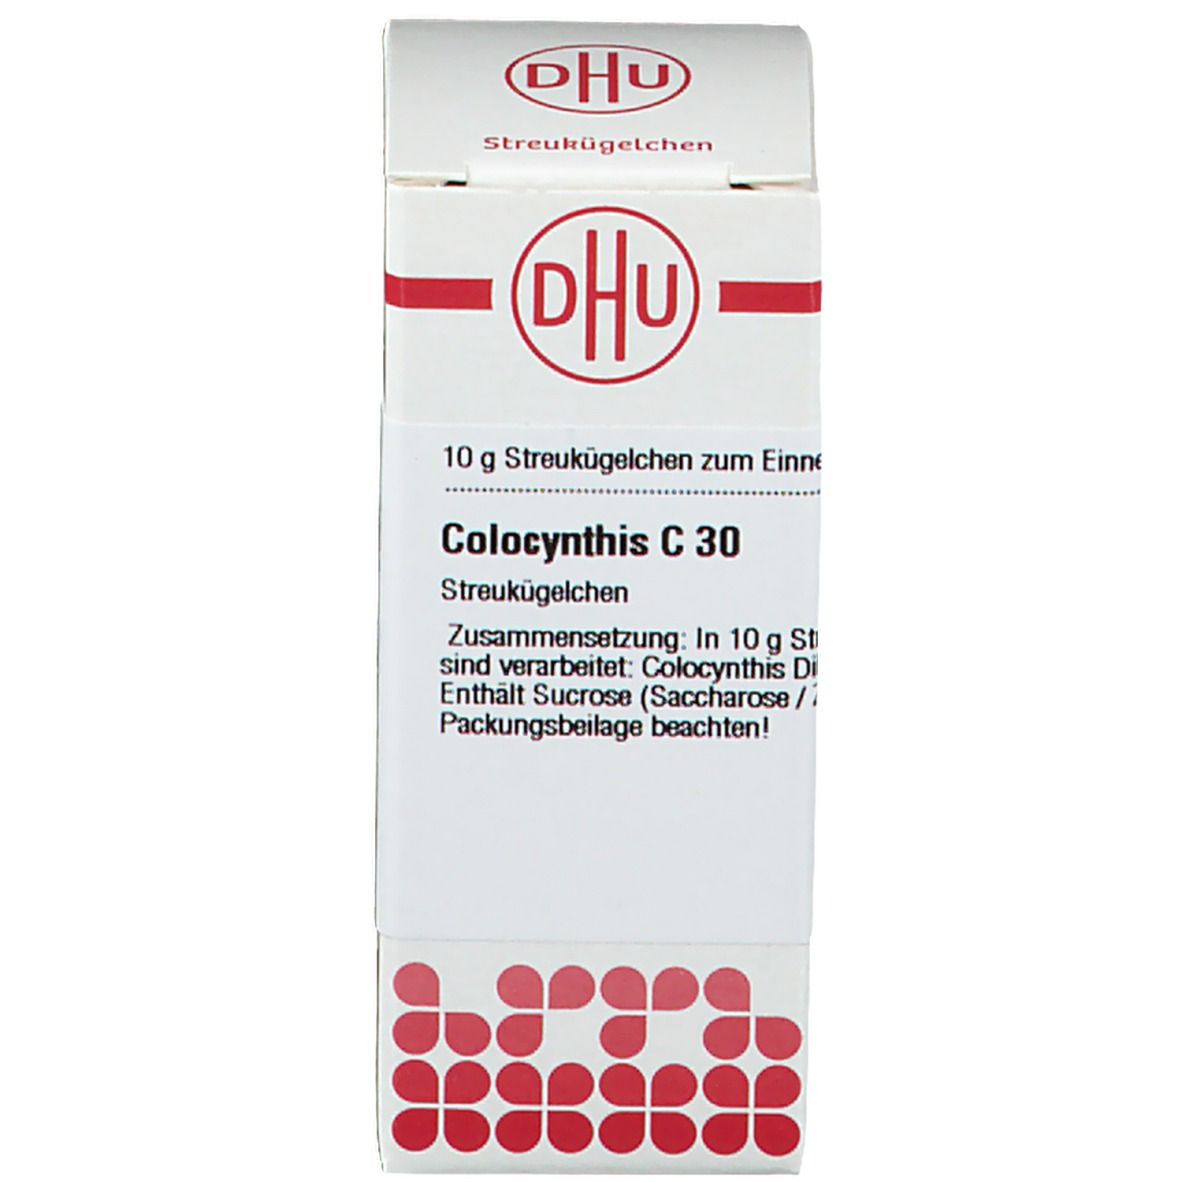 DHU Colocynthis C30